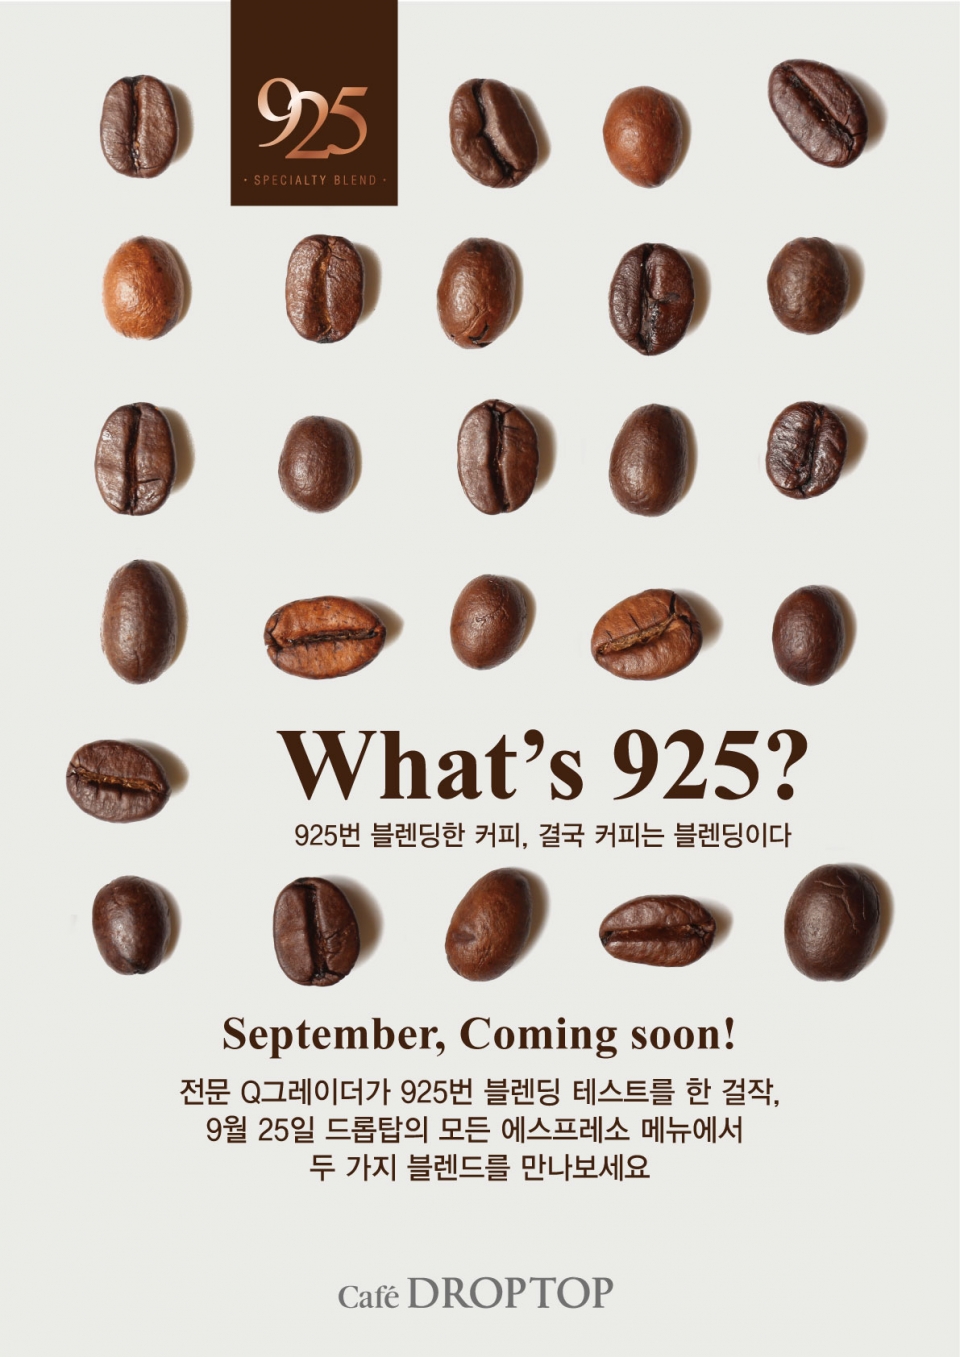 카페 드롭탑은 스페셜티 커피 ‘925 블렌드’를 내놨다. (카페 드롭탑 제공) 2019.10.8/그린포스트코리아